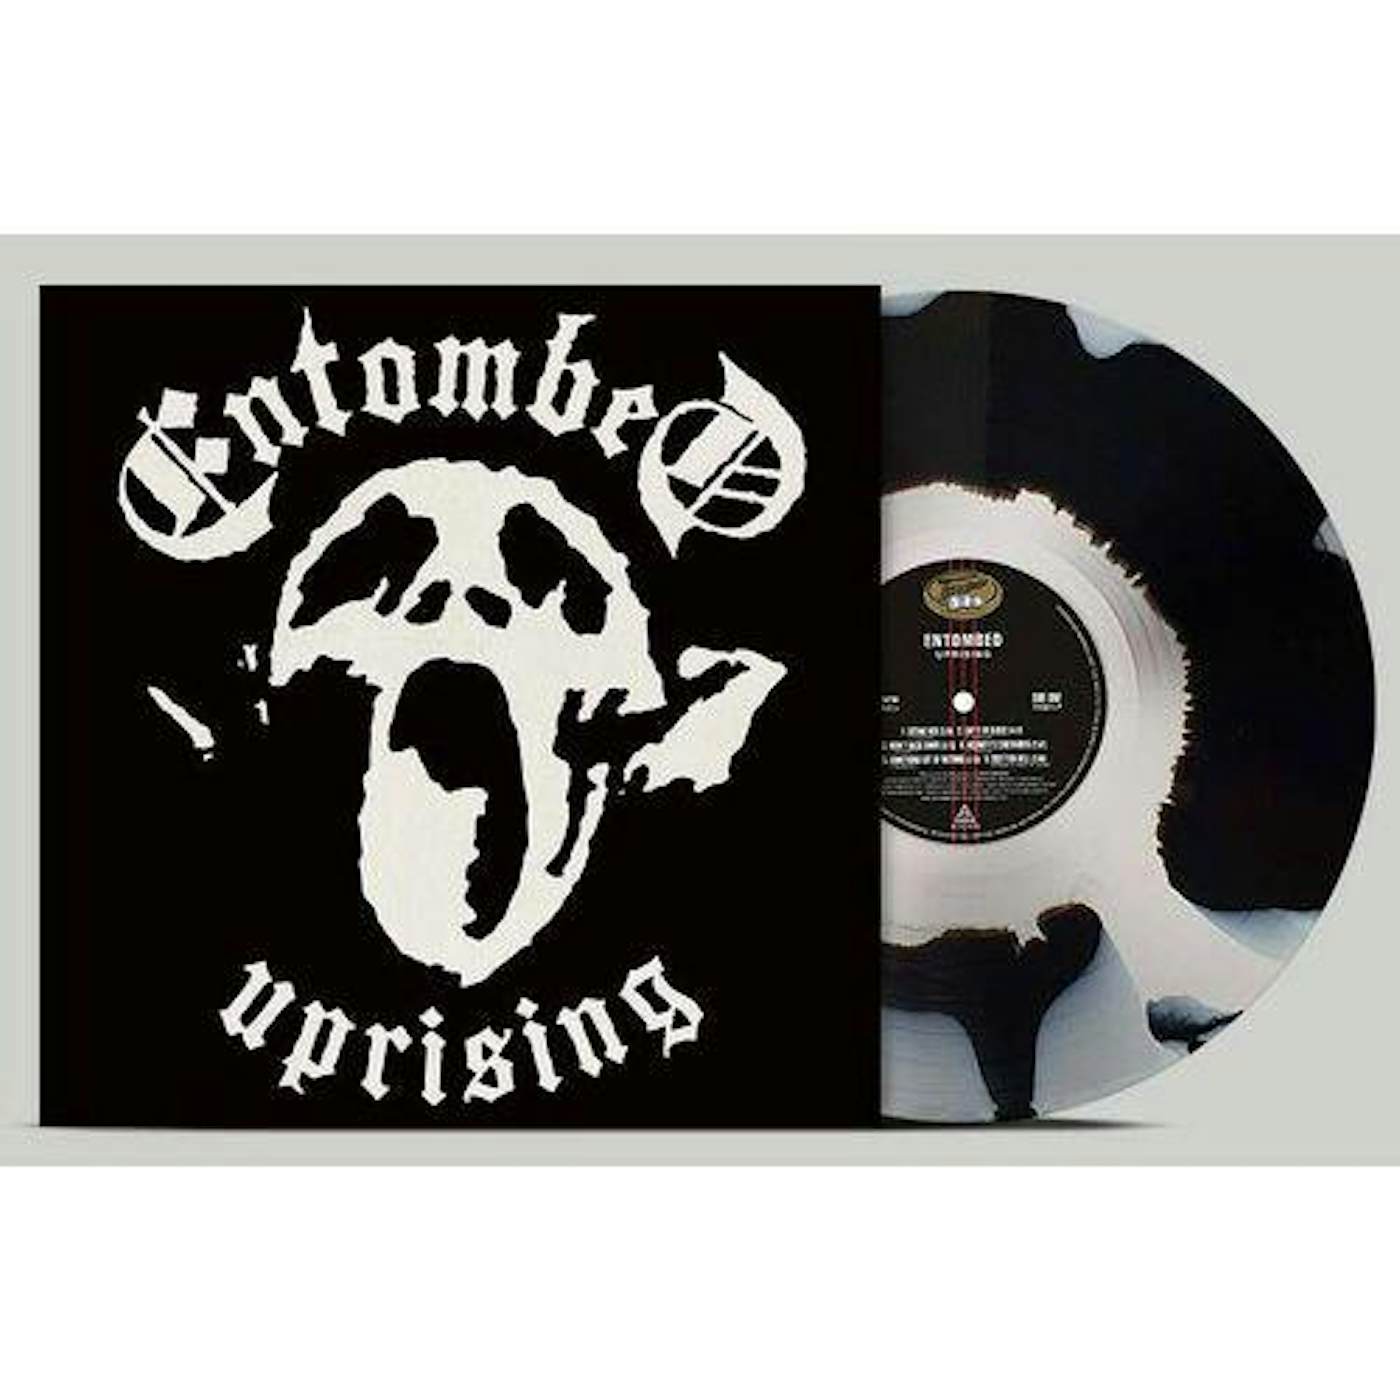 Entombed Uprising (Inkspot Vinyl) (Limited/Remastered) Vinyl Record